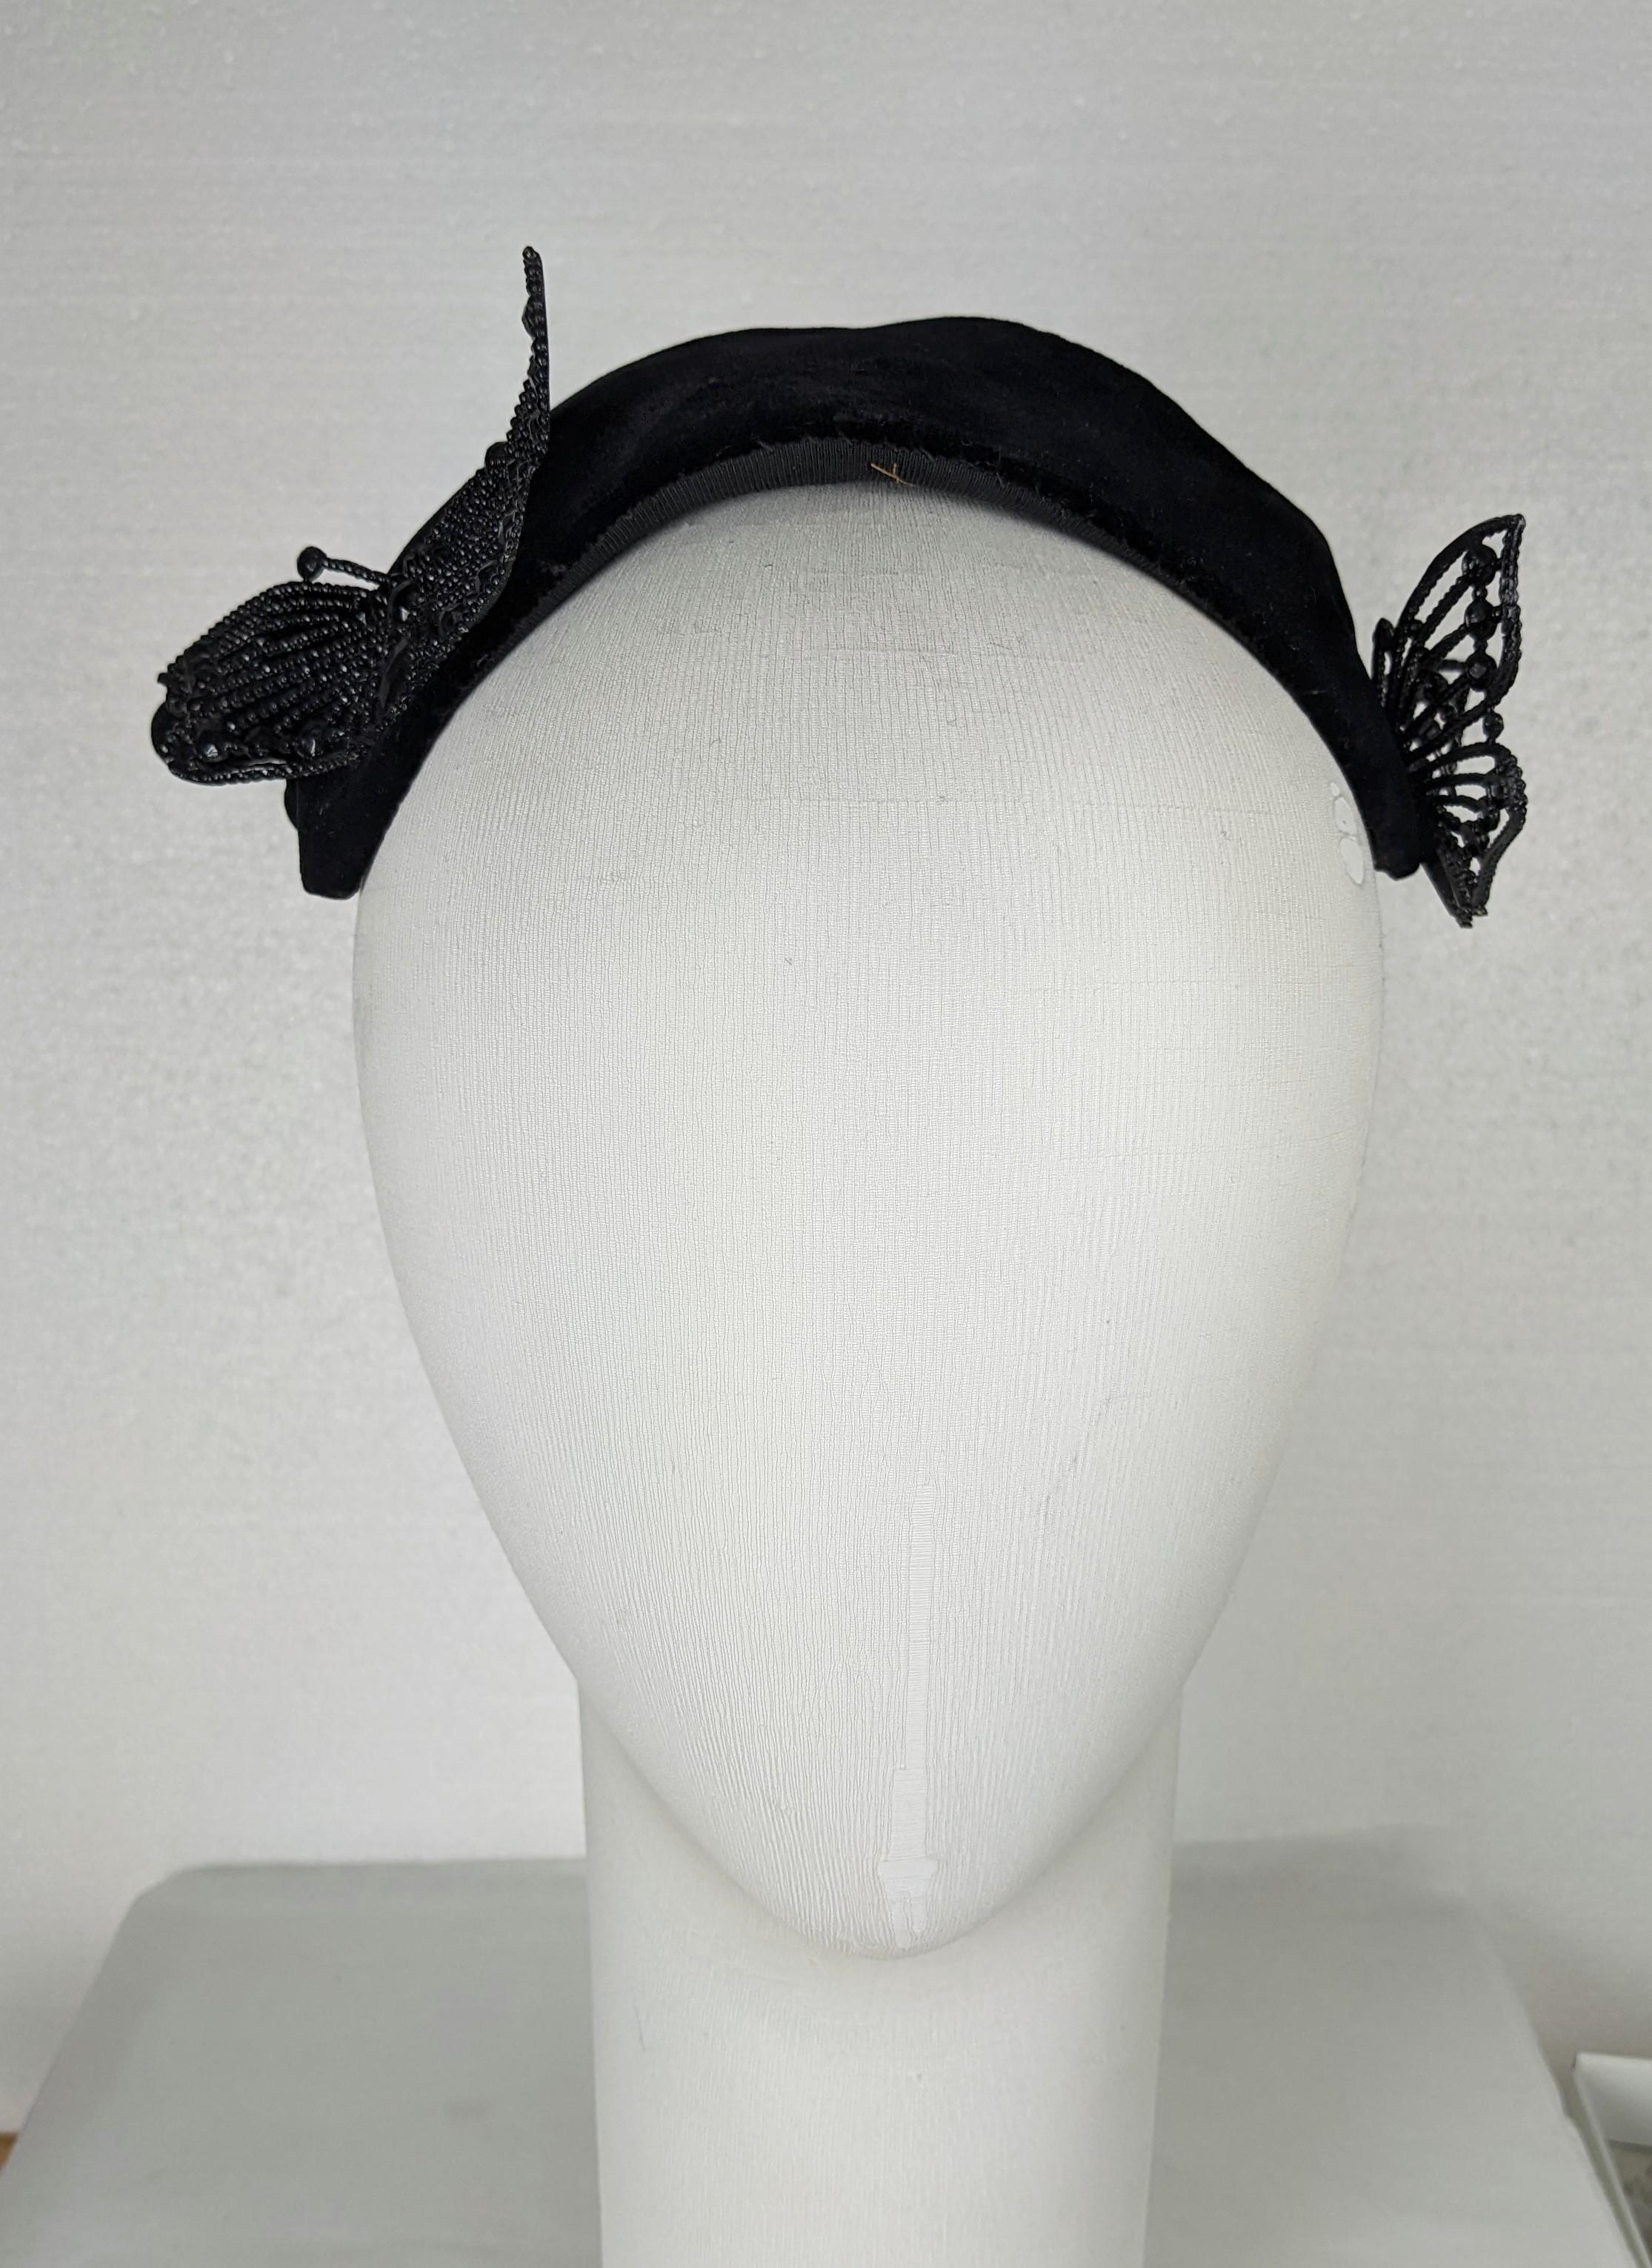 Seltene Fantasy-Sammlermaske Bes-Ben Surreal Hut aus den 1940er Jahren. Der verrückte Hutmacher aus Chicago entwarf einige der verrücktesten Scherzartikel-Designs der damaligen Zeit. Maskenförmiger Hut aus schwarzem Samt mit